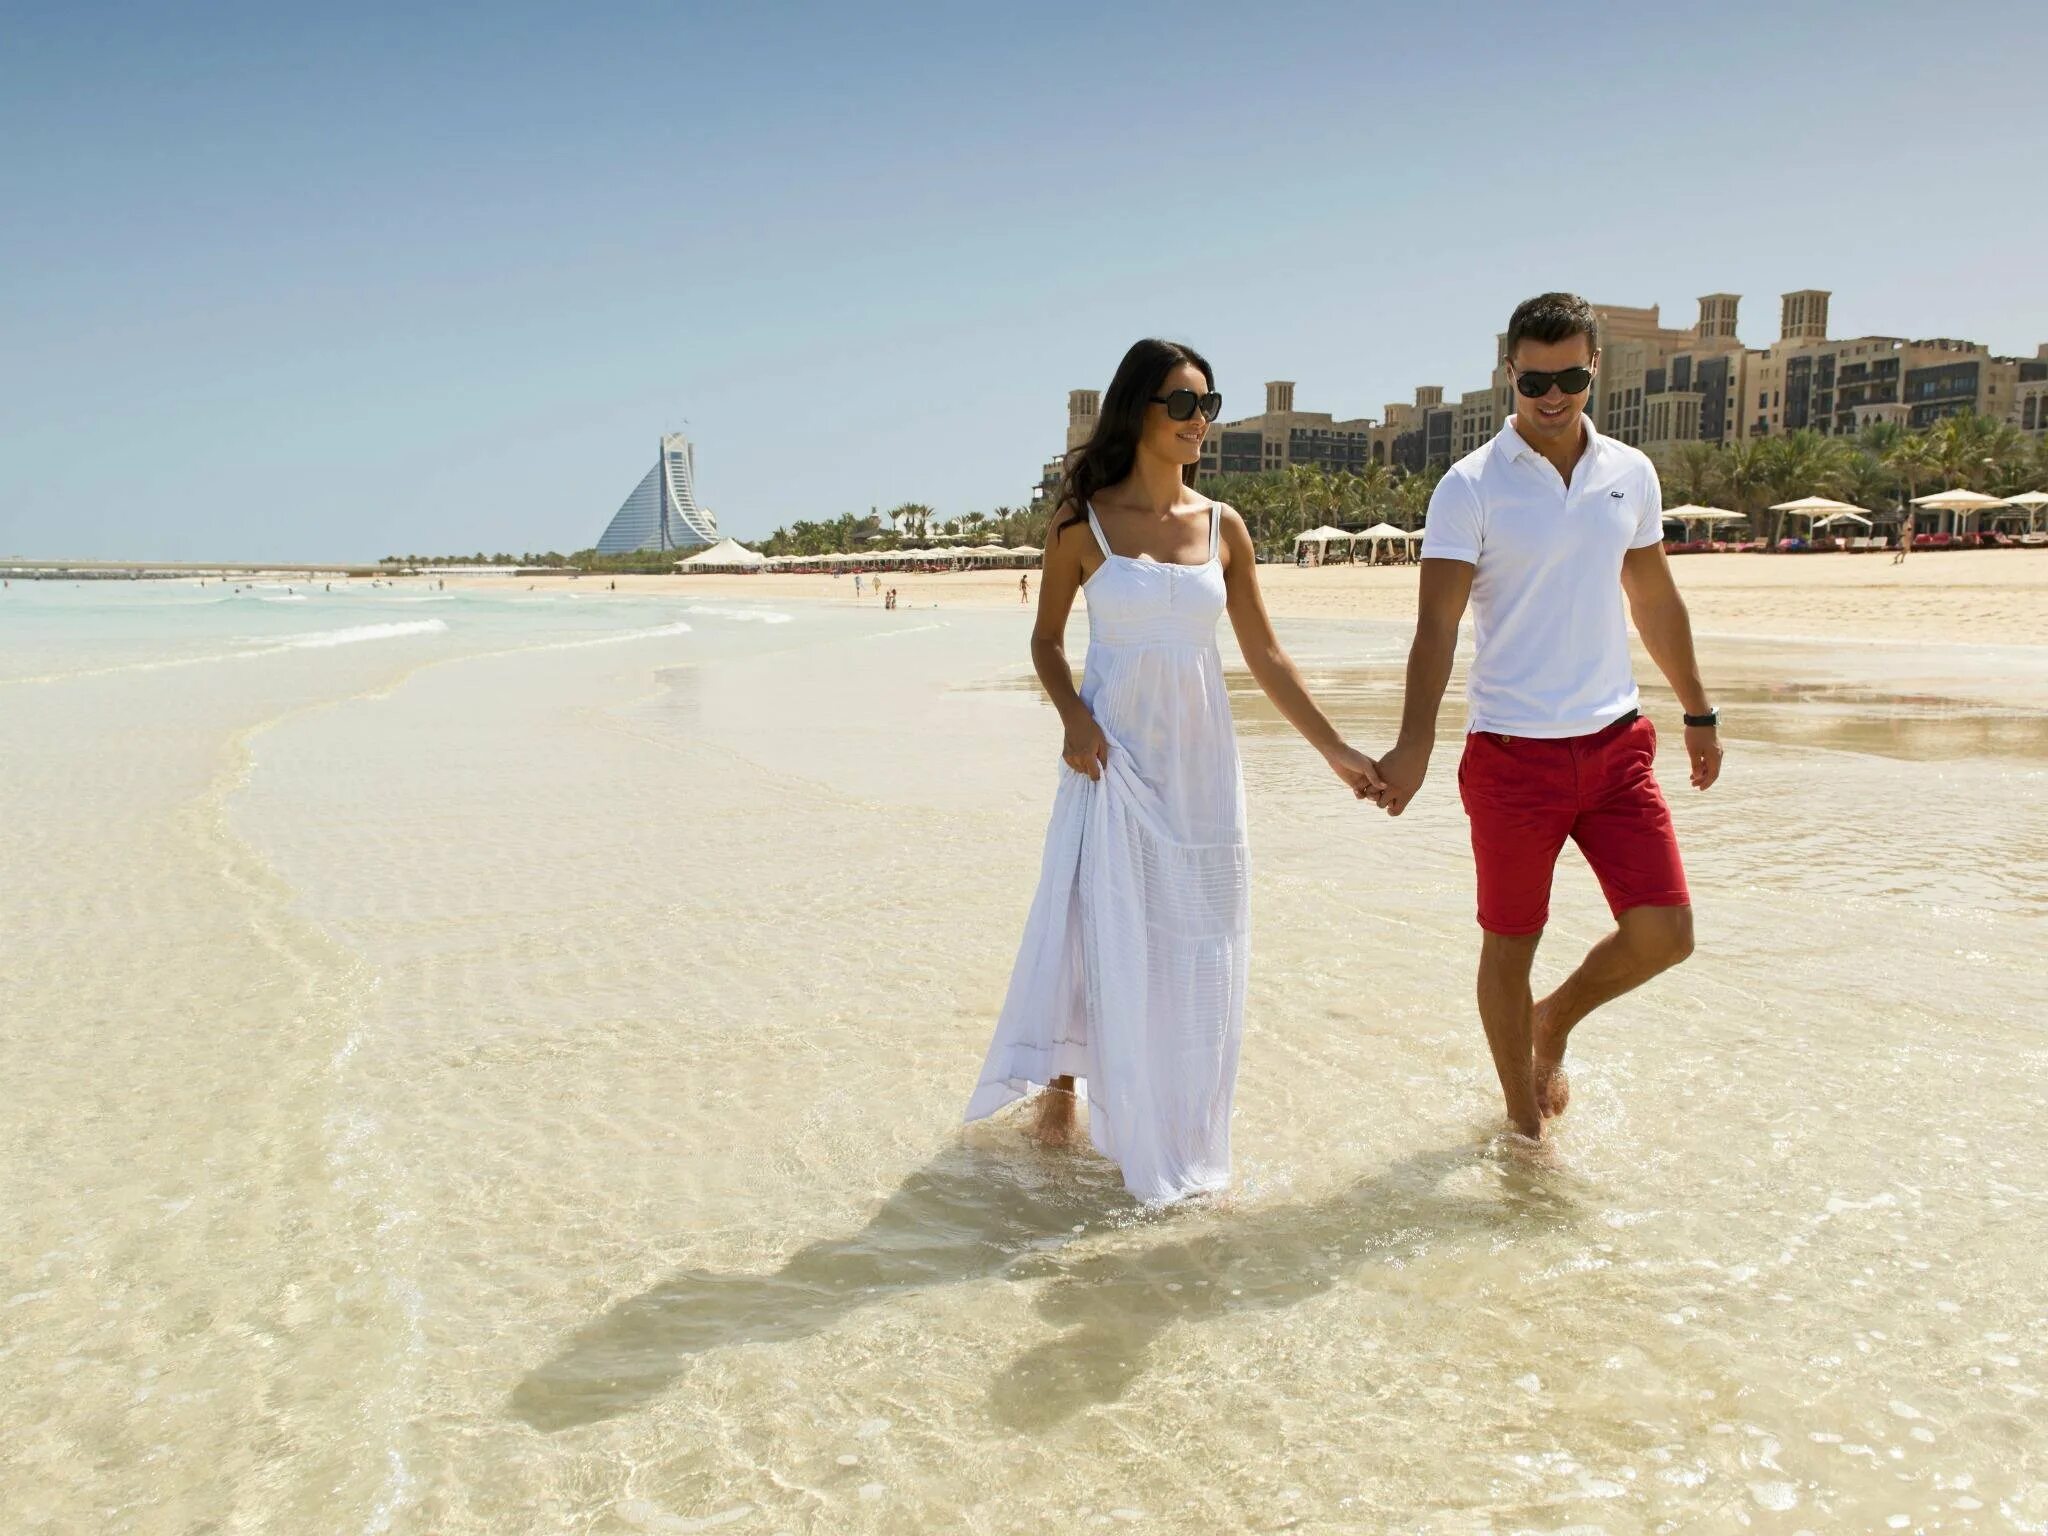 Мадинат пляж Дубай. Фотосессия в Дубае. ОАЭ девушки на пляже. Парень с девушкой в Дубае.